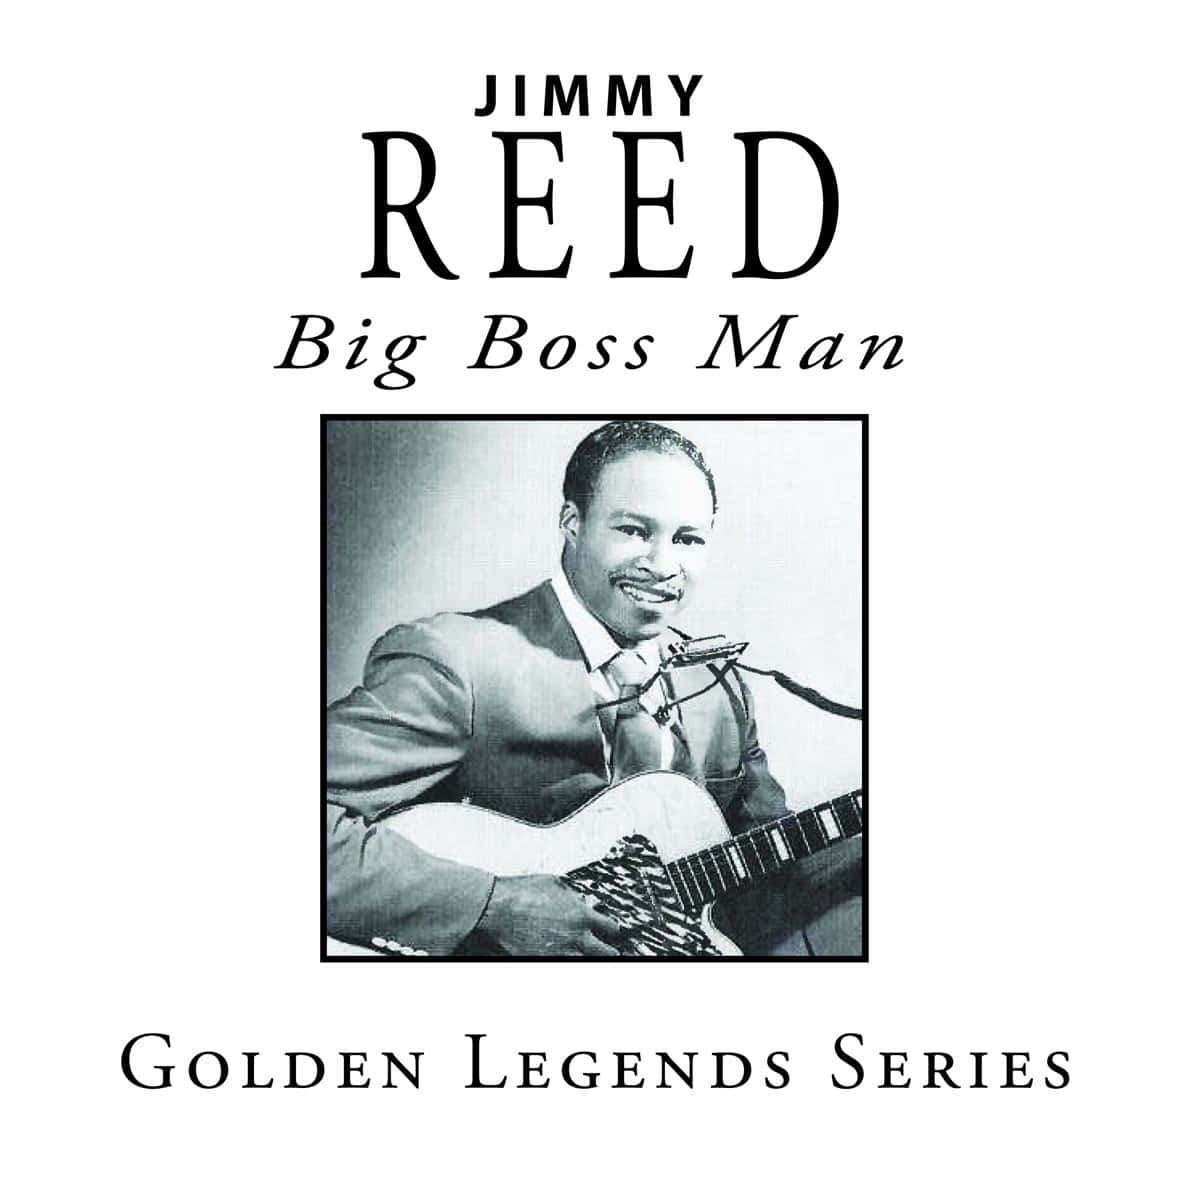 Jimmy Reed Golden Legends Series Poster Wallpaper